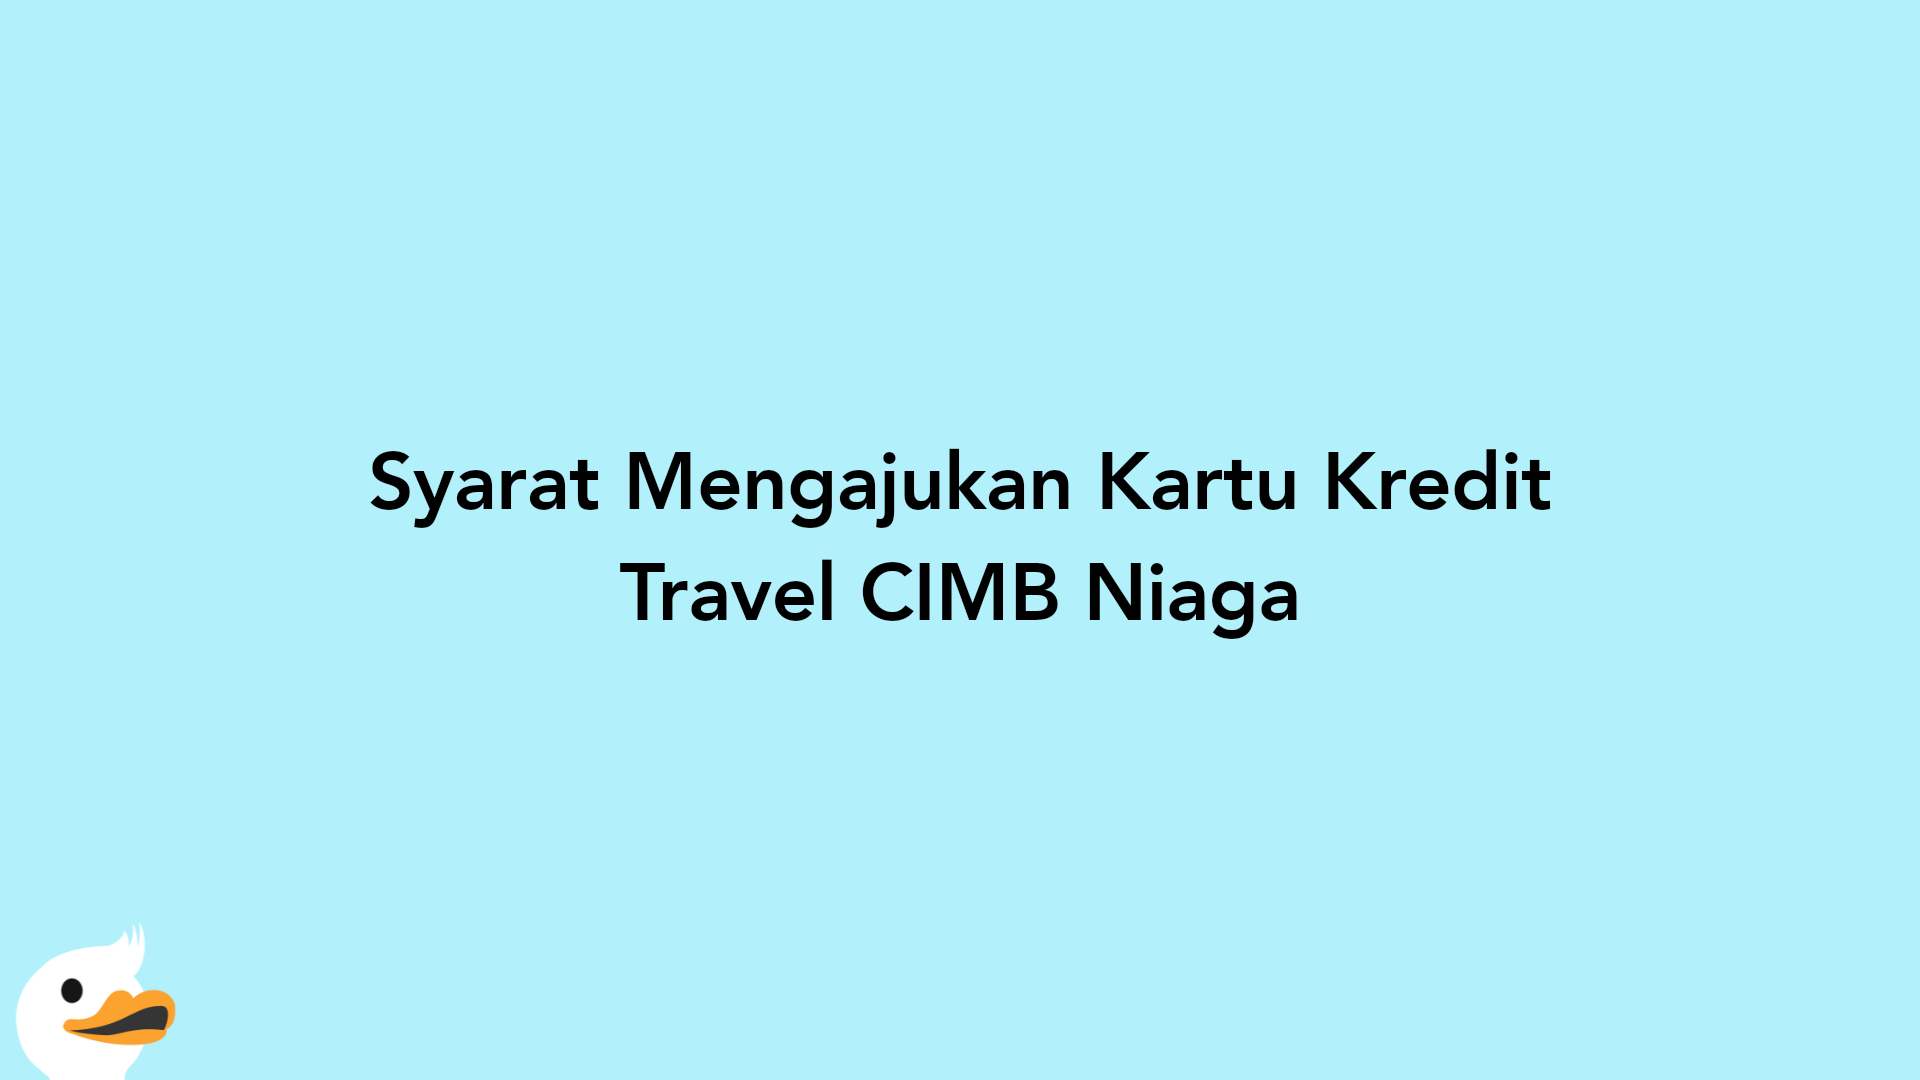 Syarat Mengajukan Kartu Kredit Travel CIMB Niaga